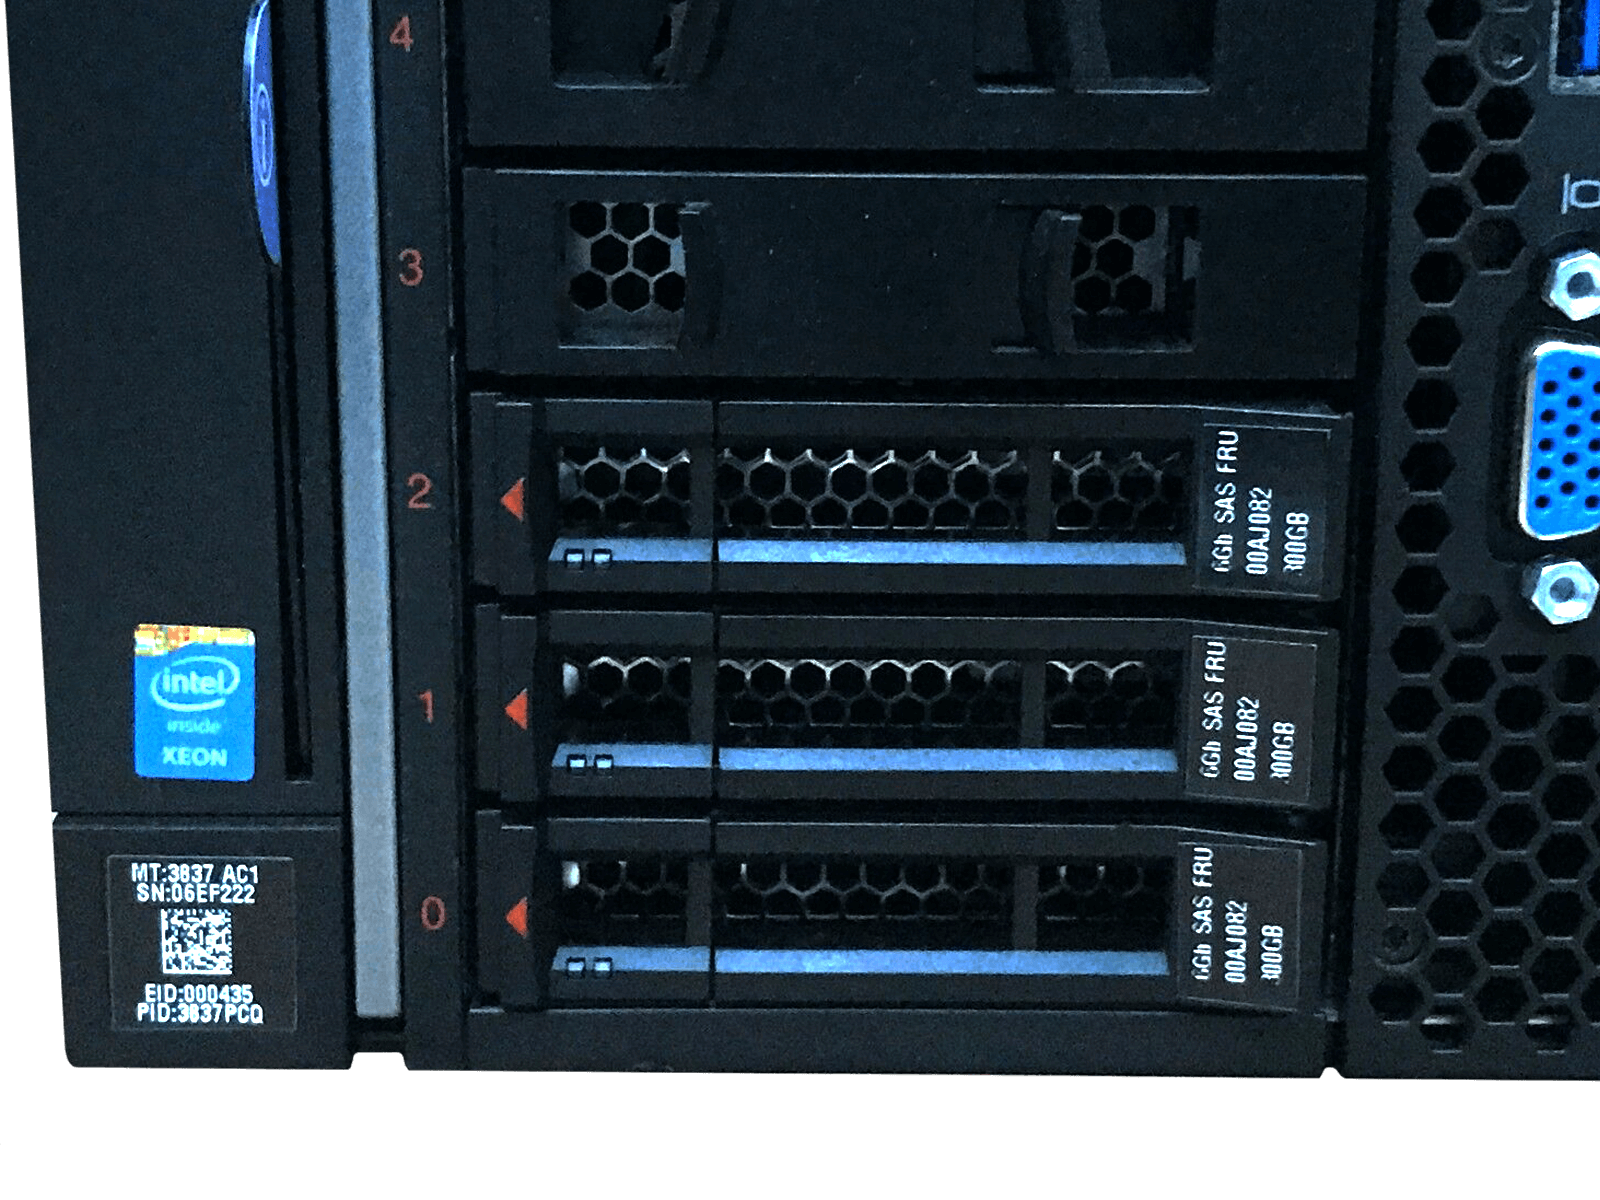 IBM x3850 X6 Server 4x Xeon E7-8880 v3 2048GB DDR4 RAM 3x 300GB 15K 4x 1400W PSU